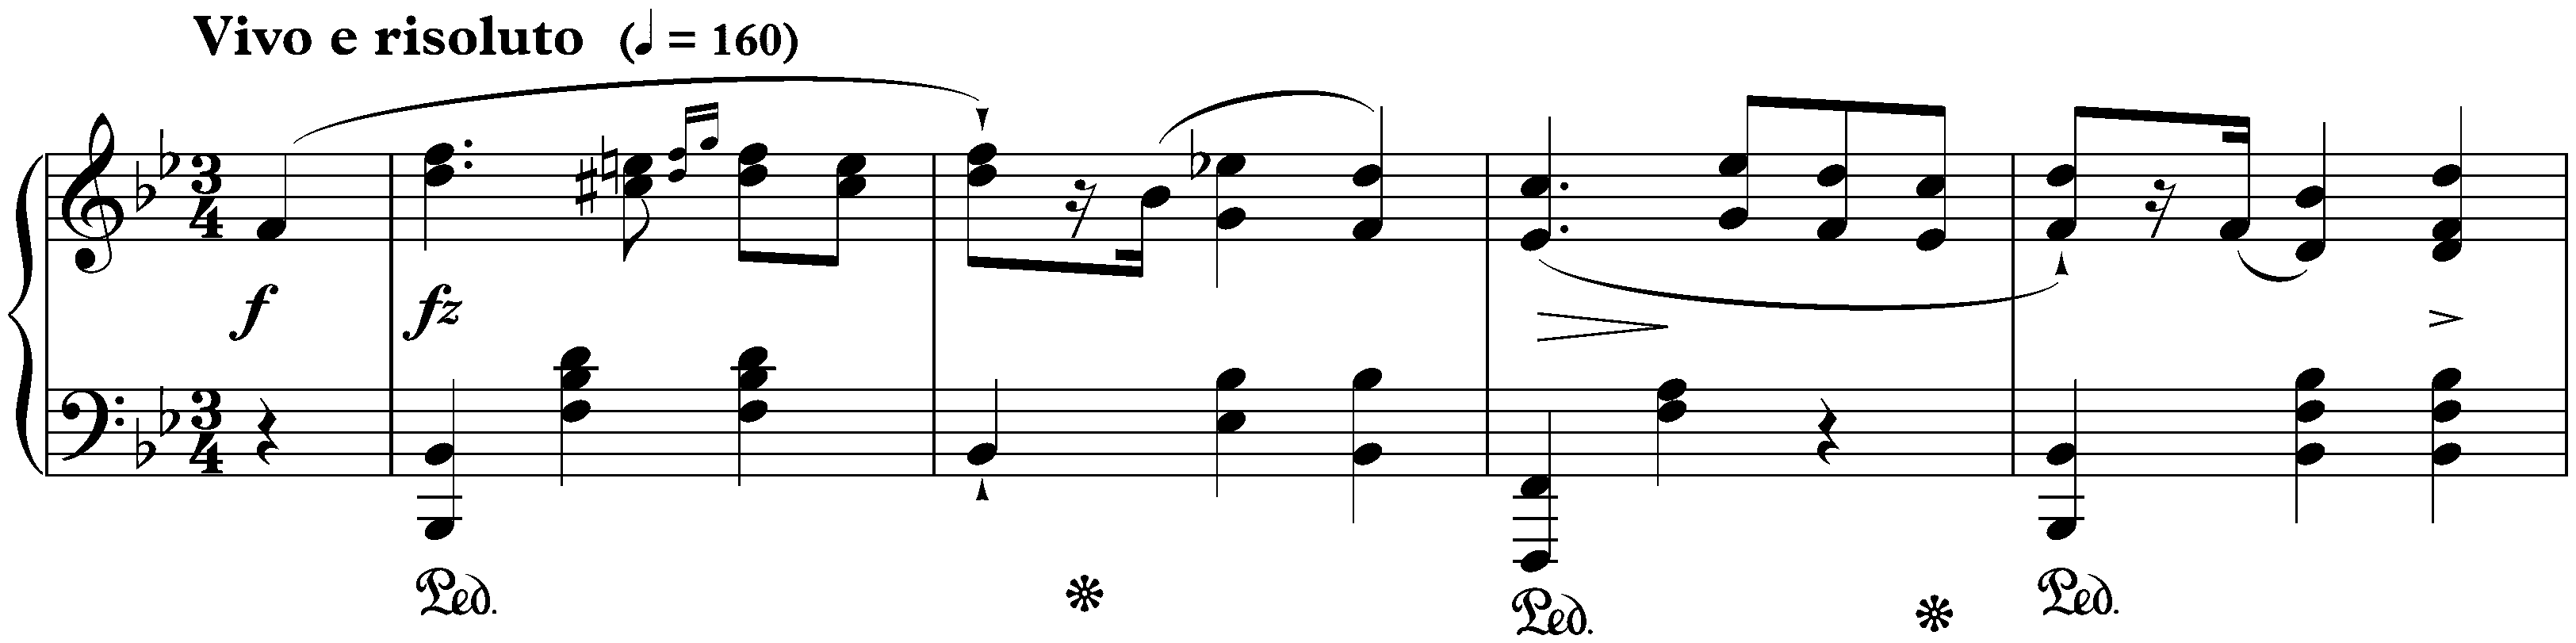 Four Mazurkas, op. 17; 1. B-flat major